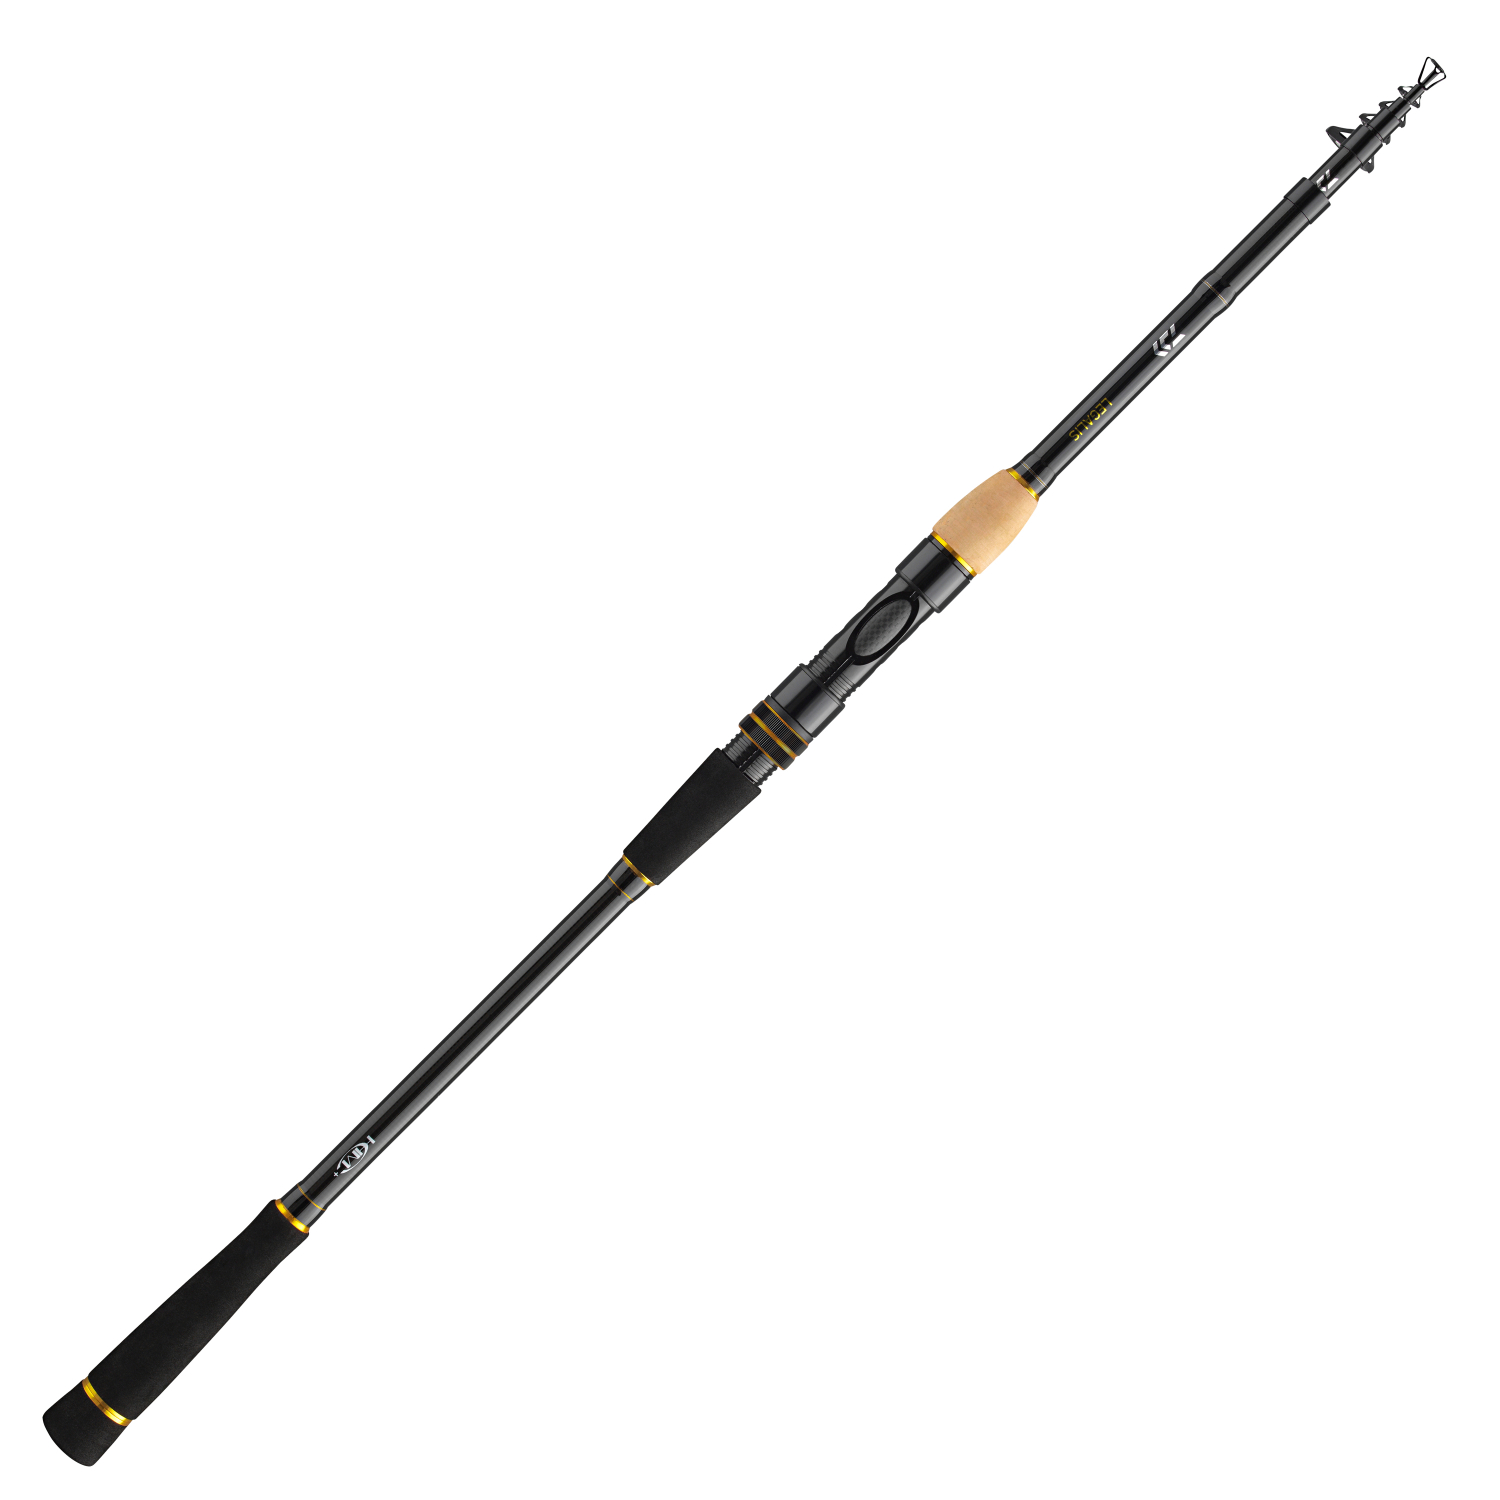 Daiwa Fishing Rod Legalis Tele Allround (10-50 g) 